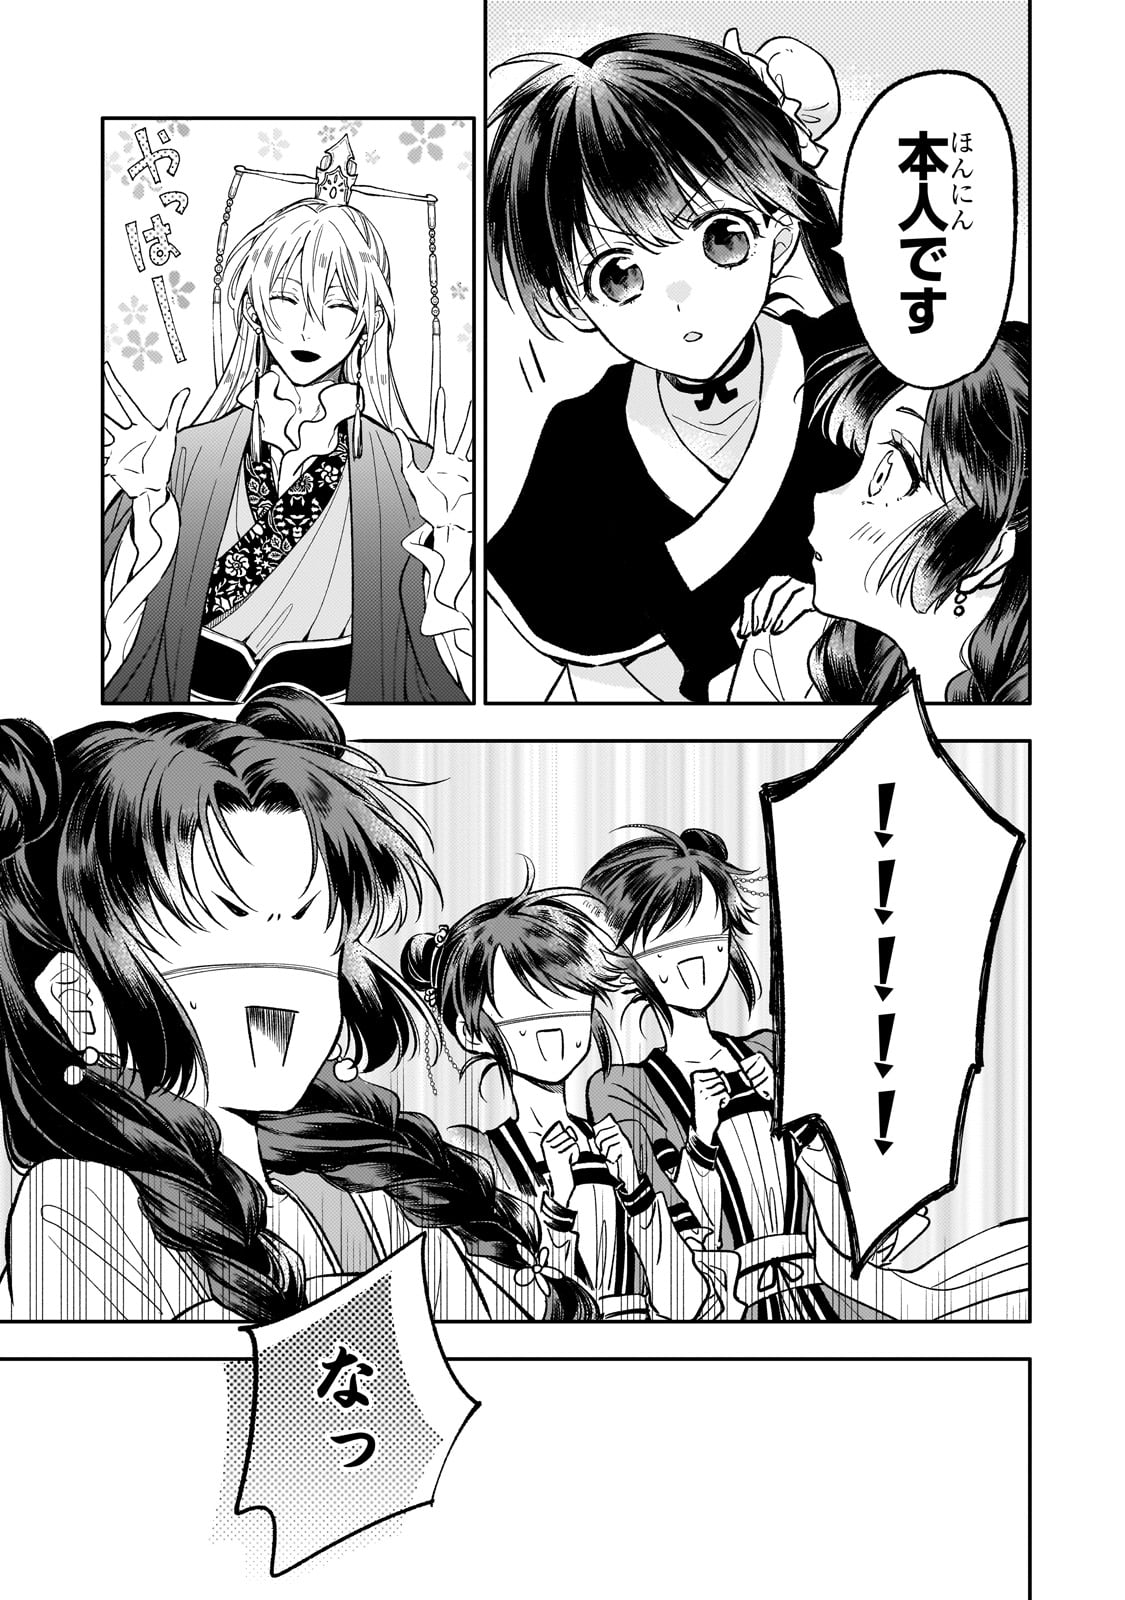 Koukyu no Zatsuyouki - Chapter 27 - Page 5